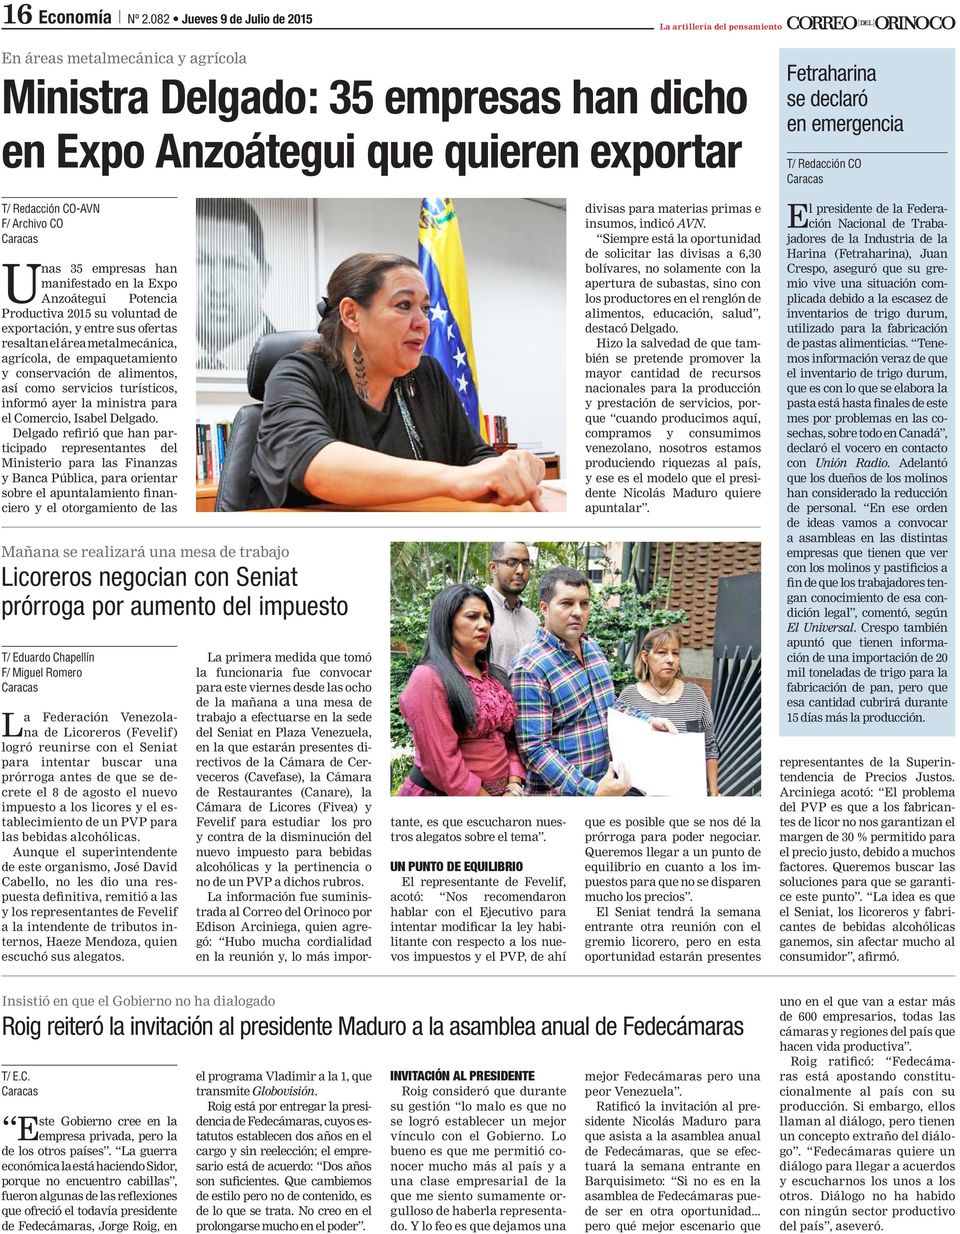 área metalmecánica, agrícola, de empaquetamiento y conservación de alimentos, así como servicios turísticos, informó ayer la ministra para el Comercio, Isabel Delgado.